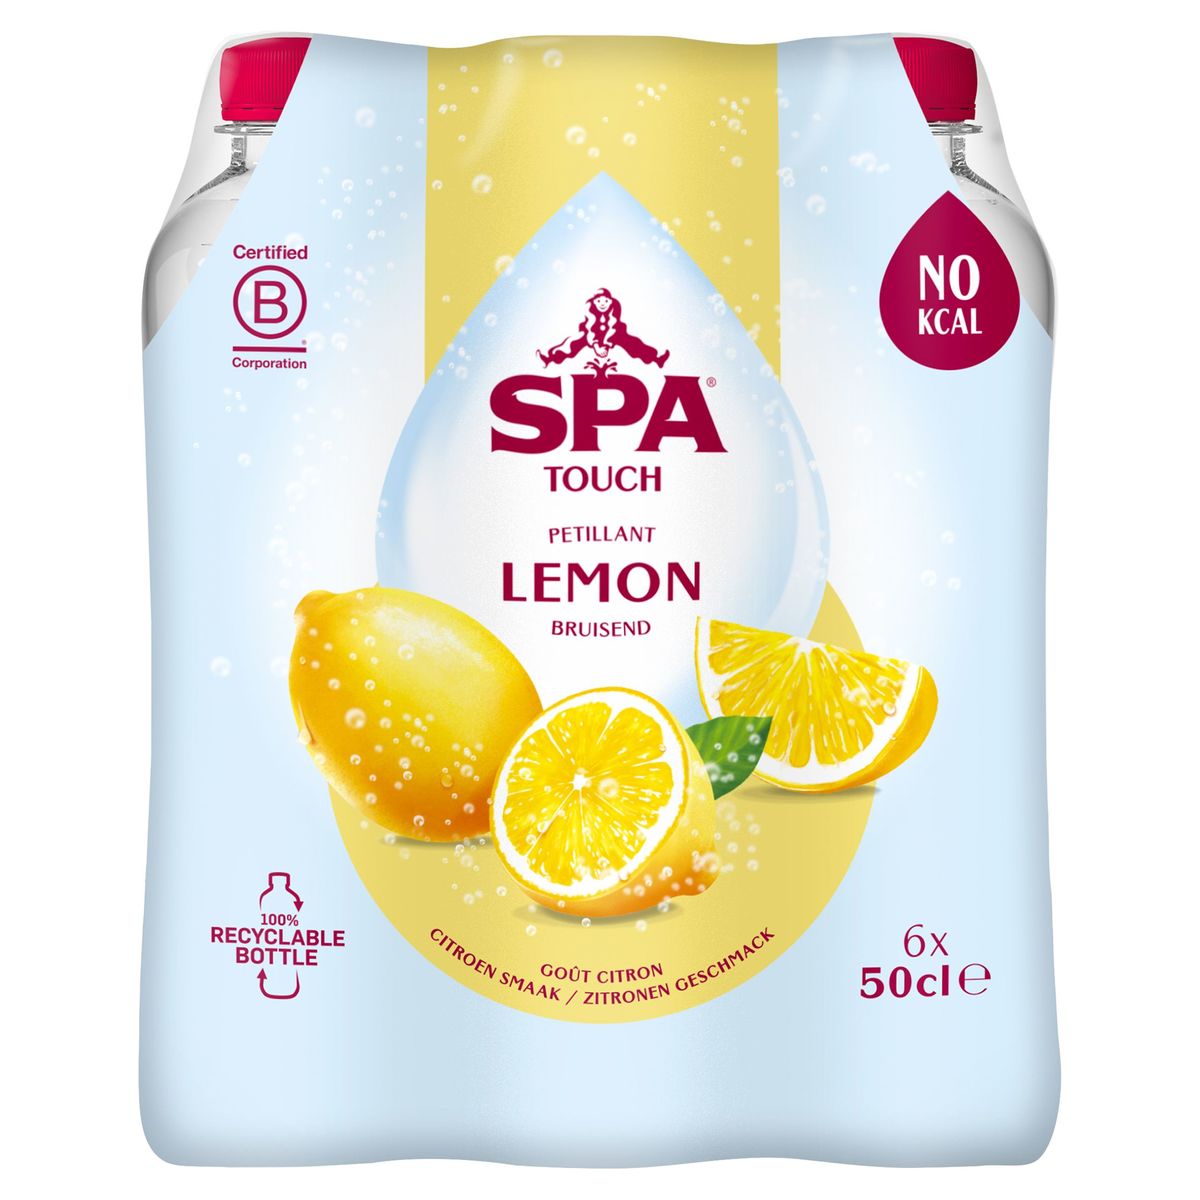 SPA TOUCH Eau Minérale Pétillante citron 6 x 50 cl